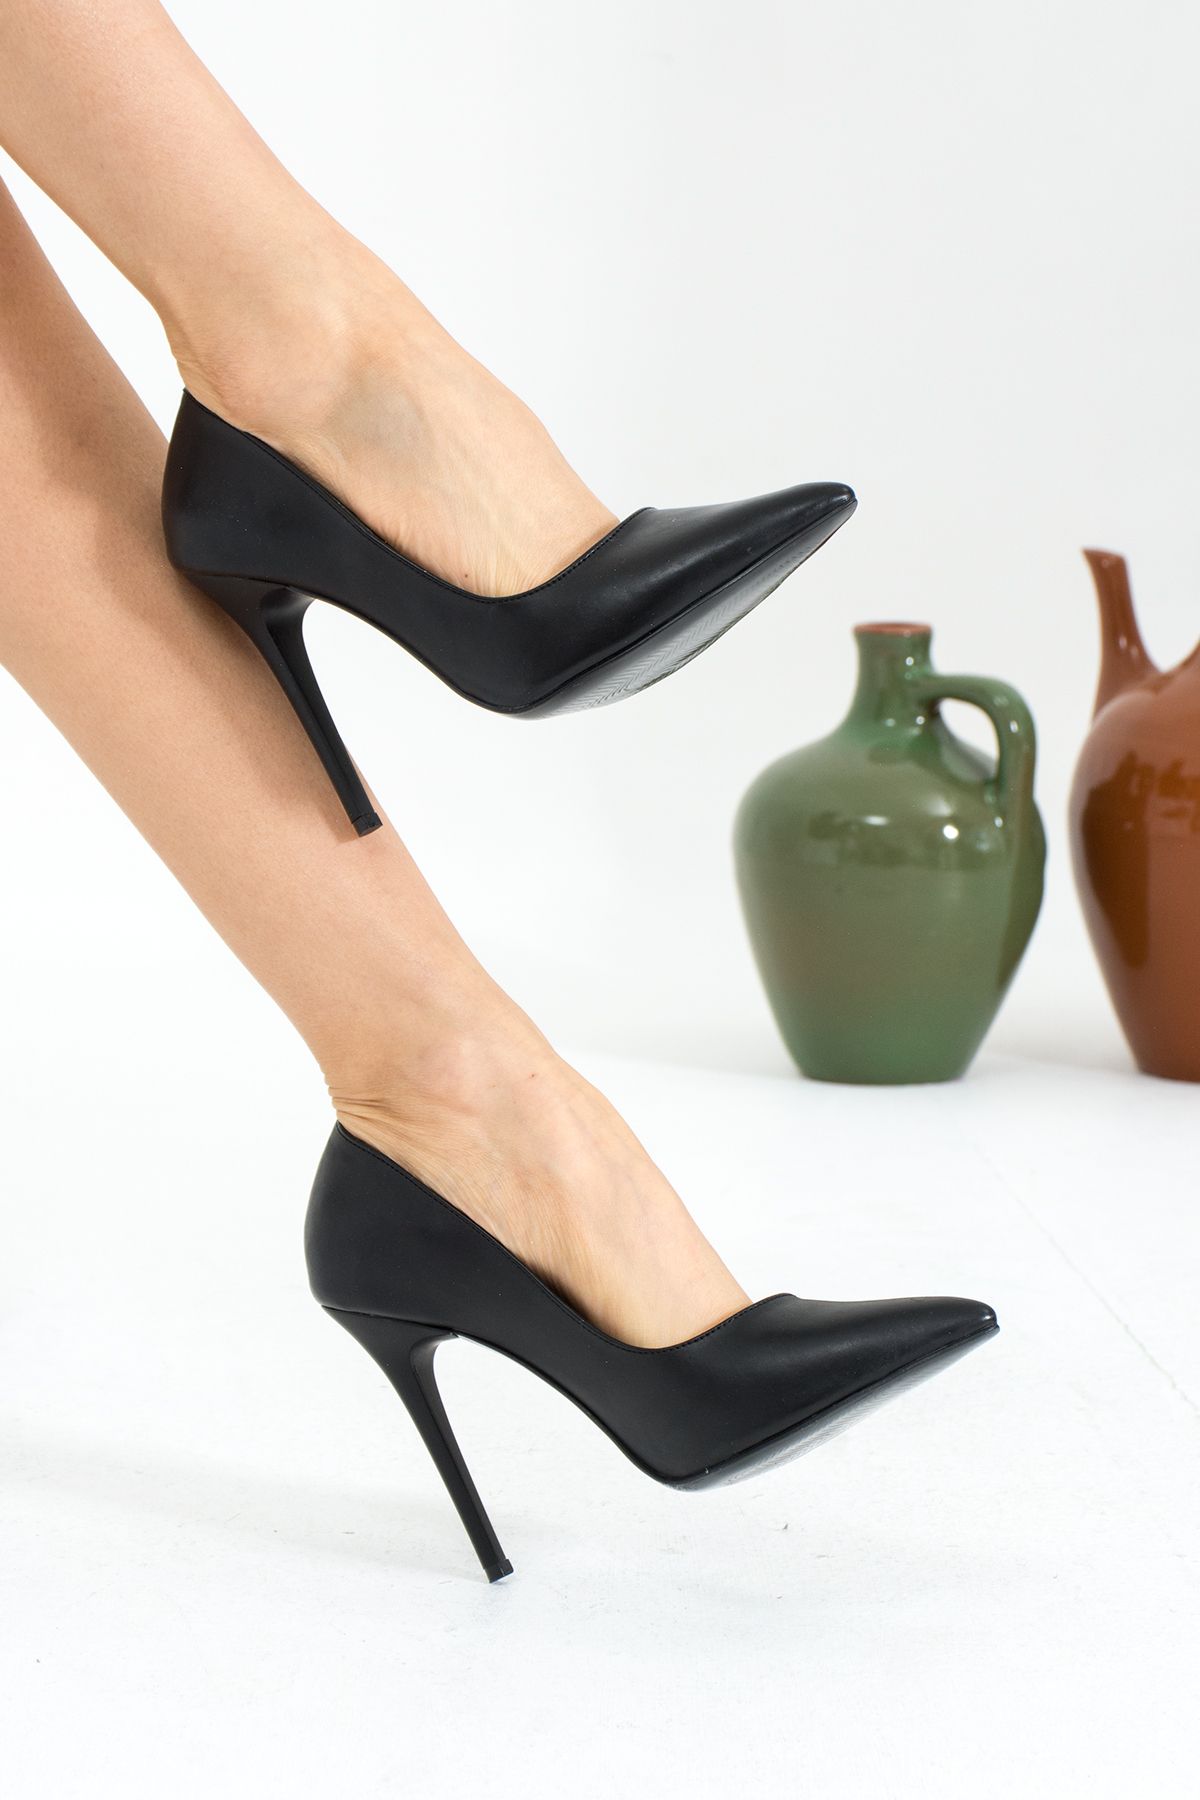 Pembe Potin Kadın Siyah Klasik Topuk Stiletto Gece Abiye Ofis Topuklu Ayakkabı